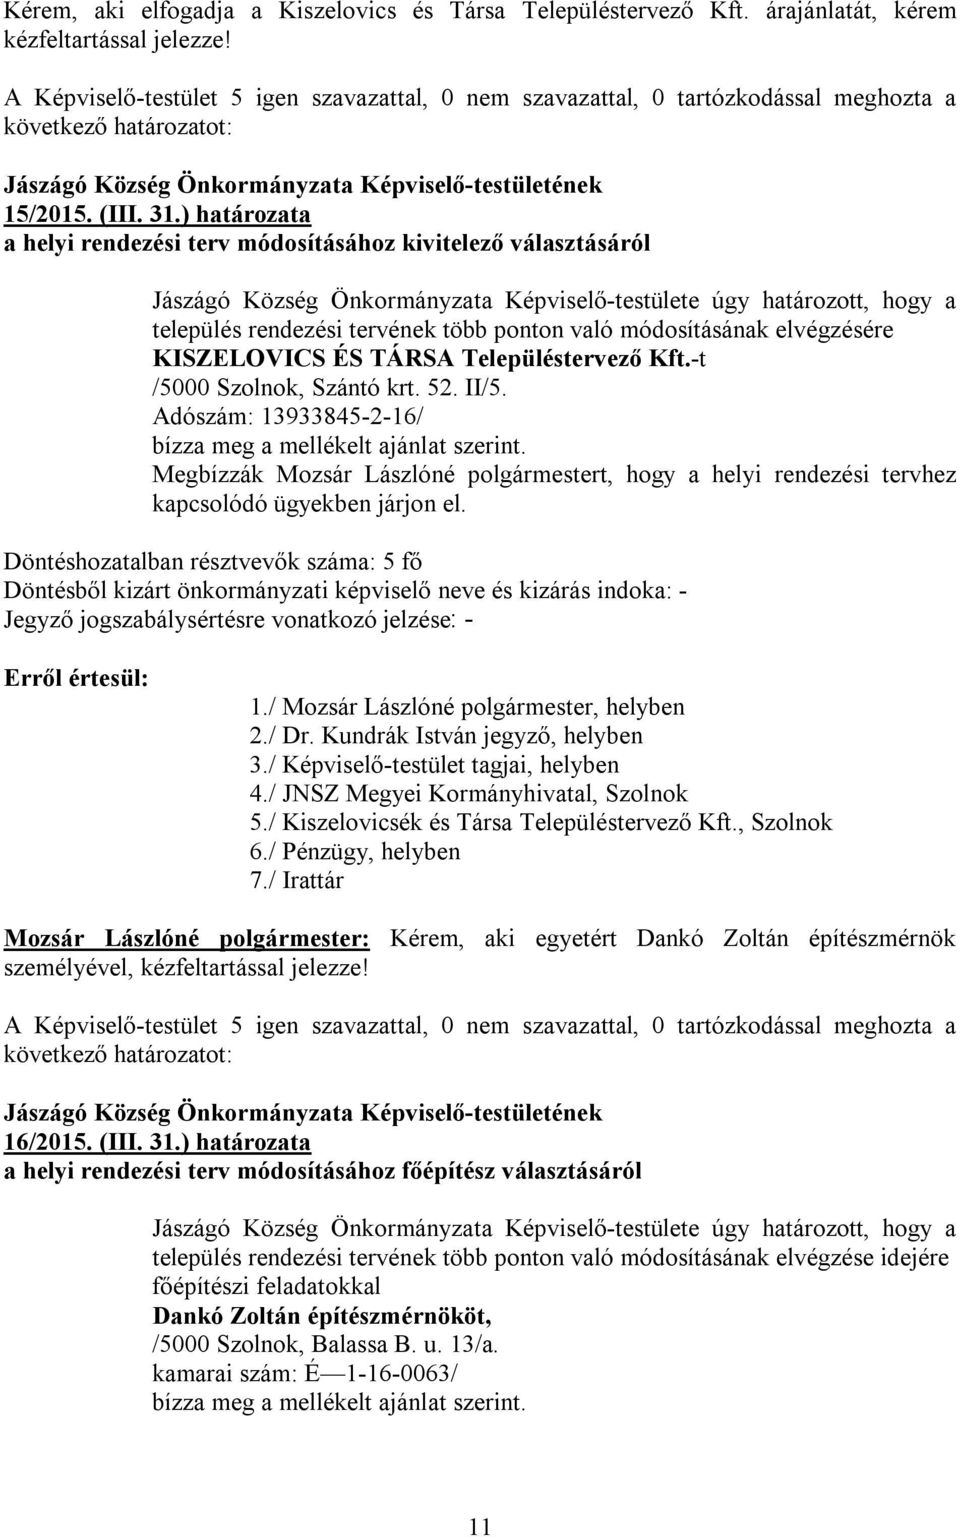 módosításának elvégzésére KISZELOVICS ÉS TÁRSA Településtervező Kft.-t /5000 Szolnok, Szántó krt. 52. II/5. Adószám: 13933845-2-16/ bízza meg a mellékelt ajánlat szerint.